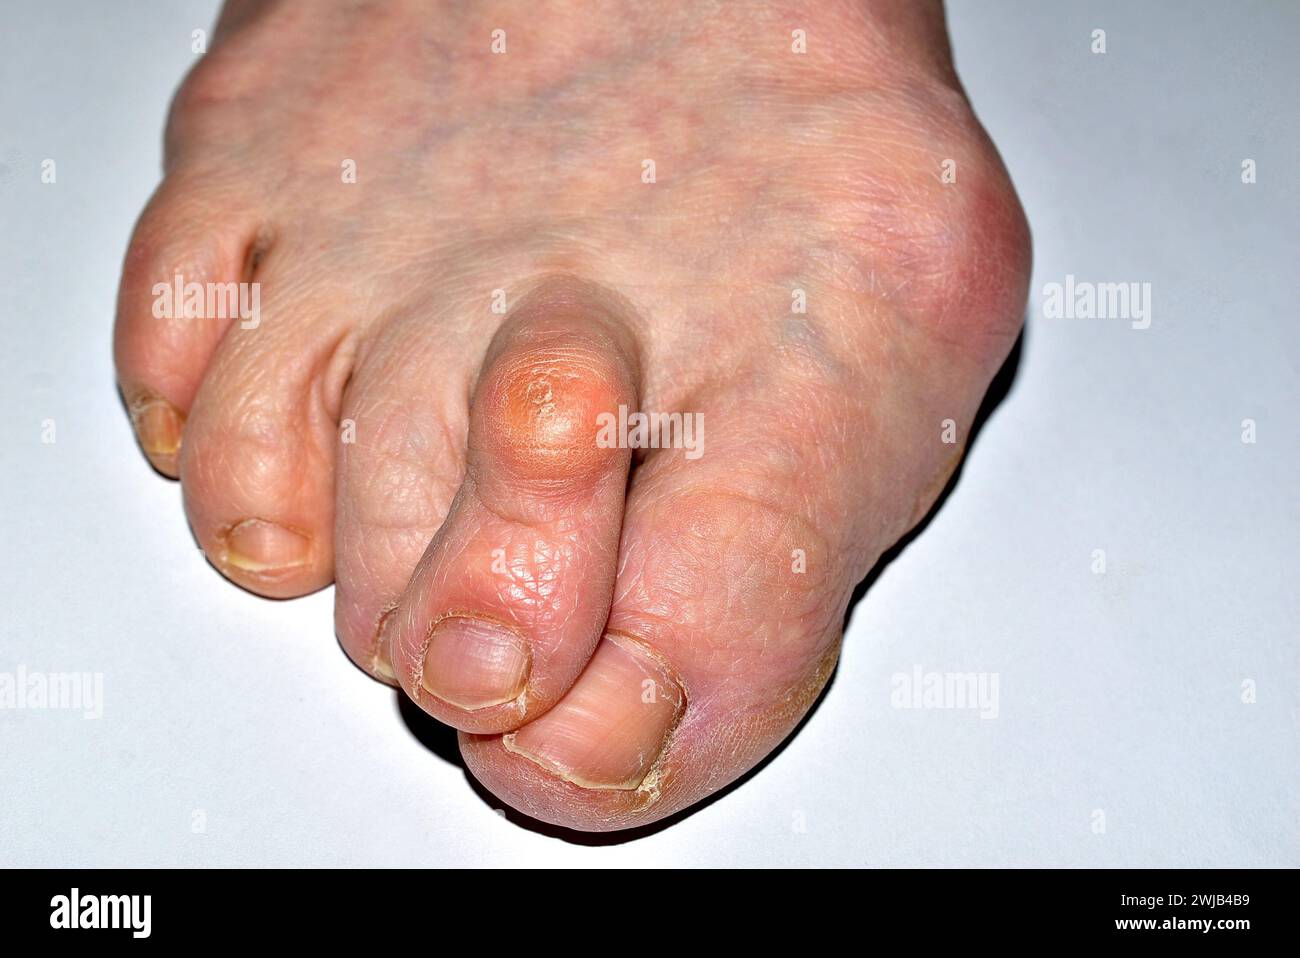 Das Bild zeigt eine Nahaufnahme des rechten Fußes des von der Krankheit betroffenen Beins, des Hallux valgus, die Zehen sind verdreht. Stockfoto